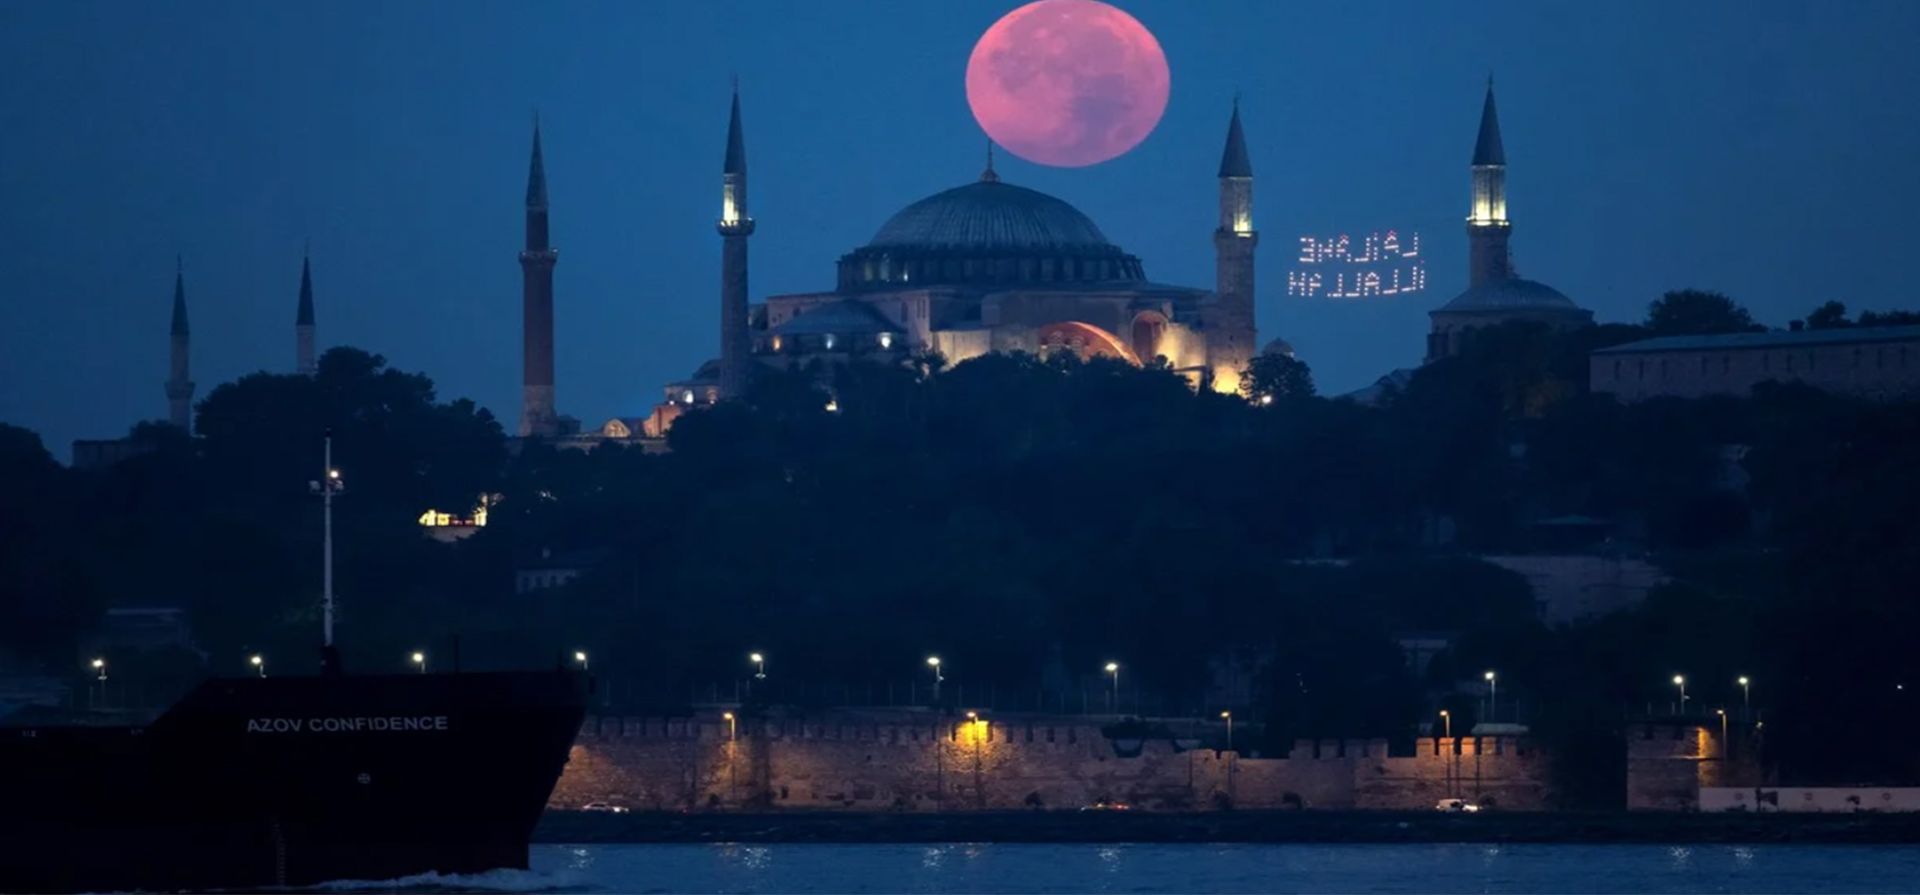 Una luna llena se pone detrás de la Gran Mezquita de Santa Sofía, en Estambul, Turquía, el 12 de agosto de 2022. Fotografía: EFE/EPA/ERDEM SAHIN